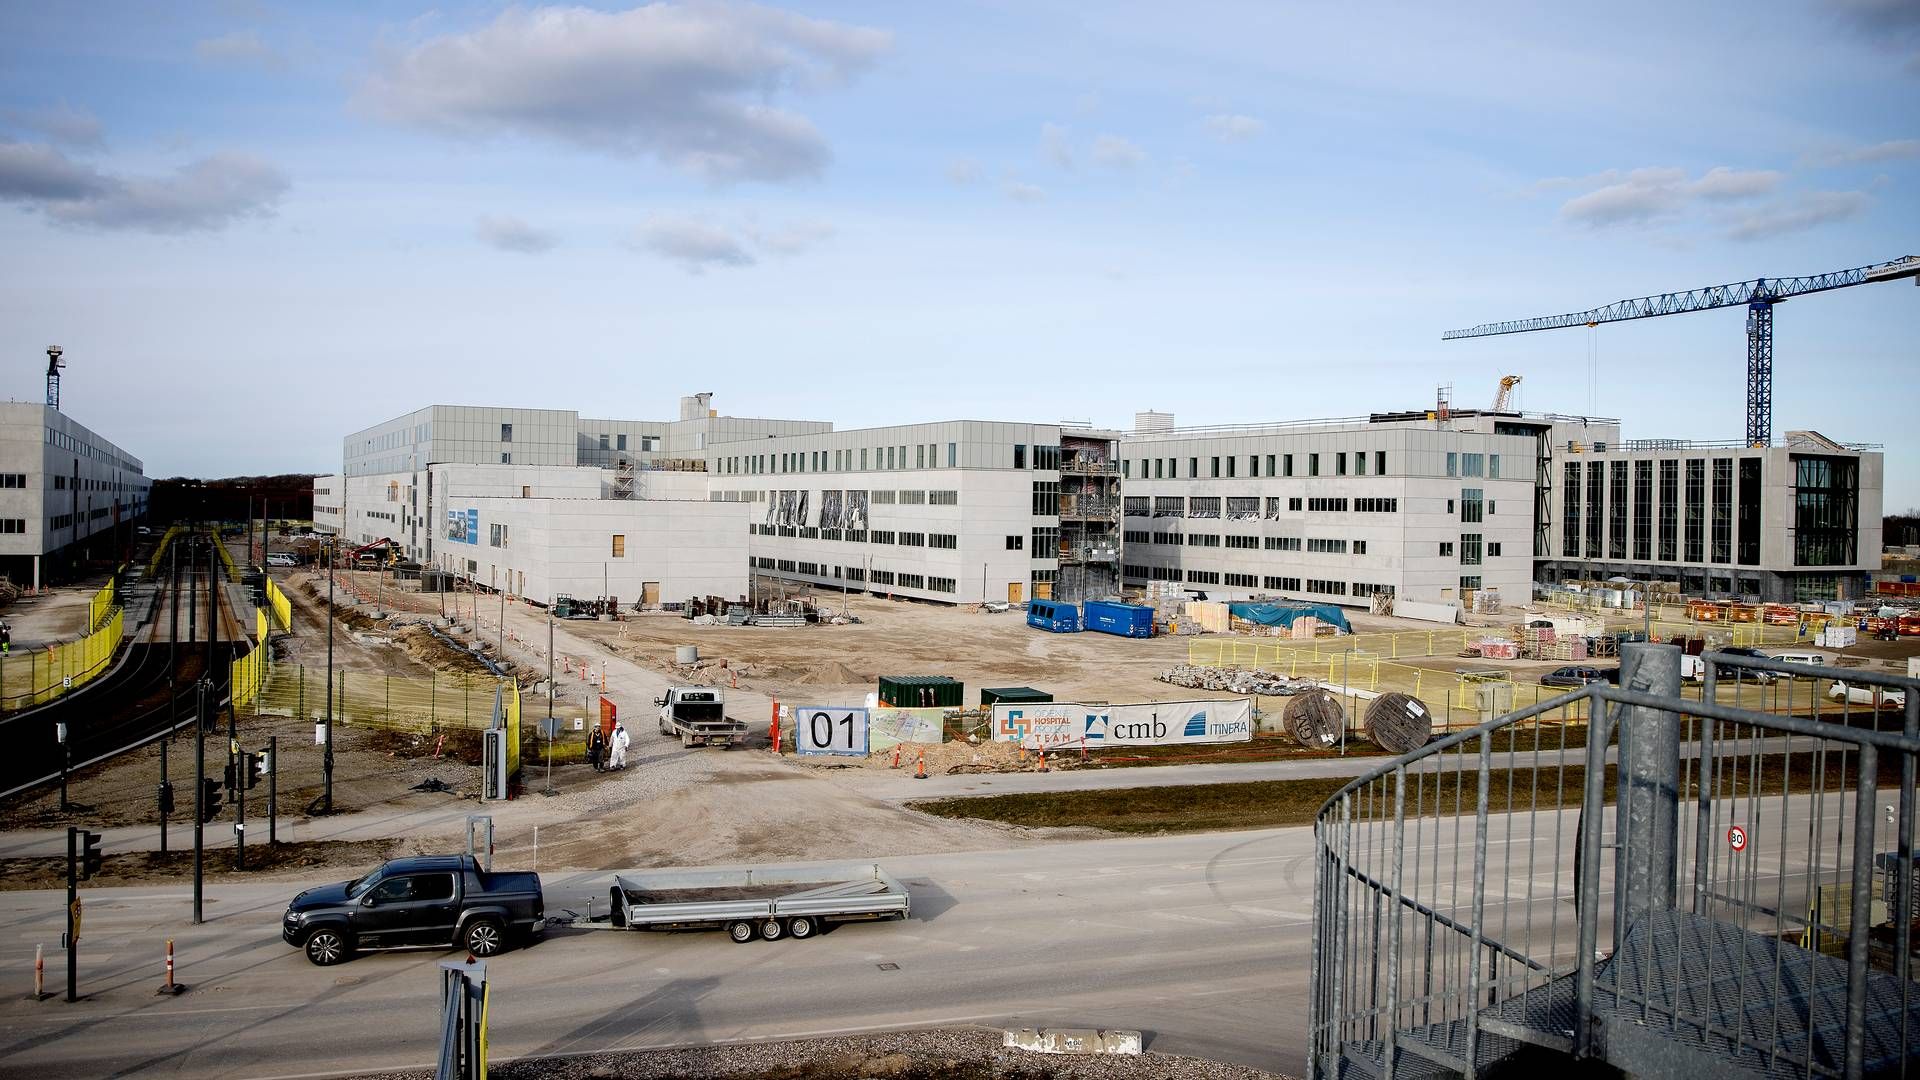 Ninette Zacho Bradsted har i sin tid i Nordjylland skullet forholde sig til problemerne med opførelsen af supersygehuset i Aalborg, hvilket er blevet seks år forsinket. Her på billedet er det opførelsen af supersygehuset i Odense, hvilket ligeledes har været ramt af problemer. | Foto: Finn Frandsen/Ritzau Scanpix